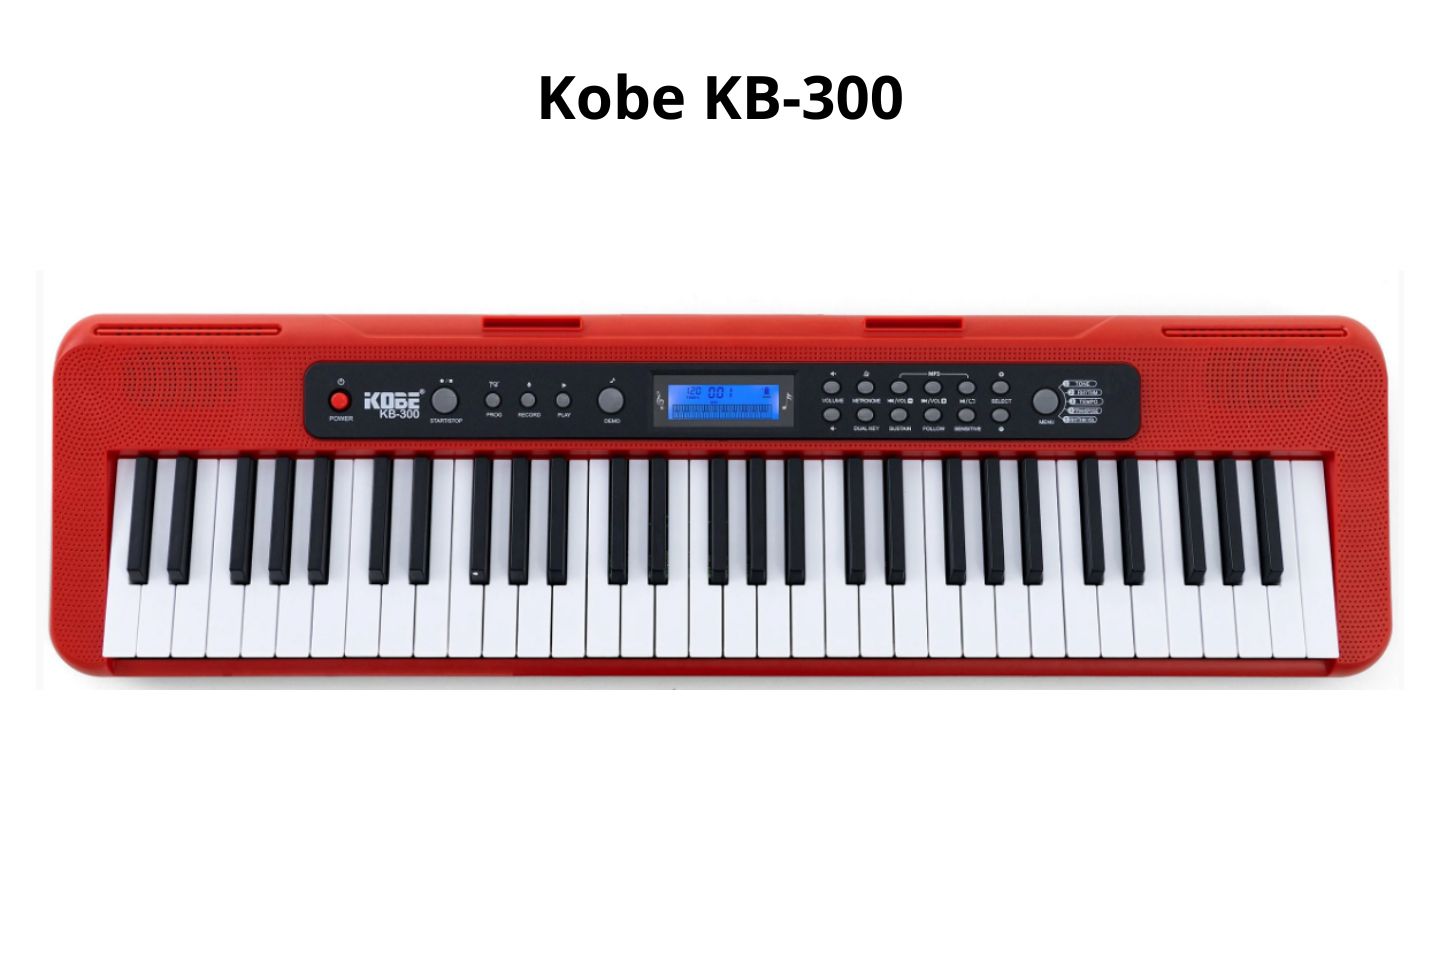 Teclado Kobe kb-300 é Bom_ Vale a Pena